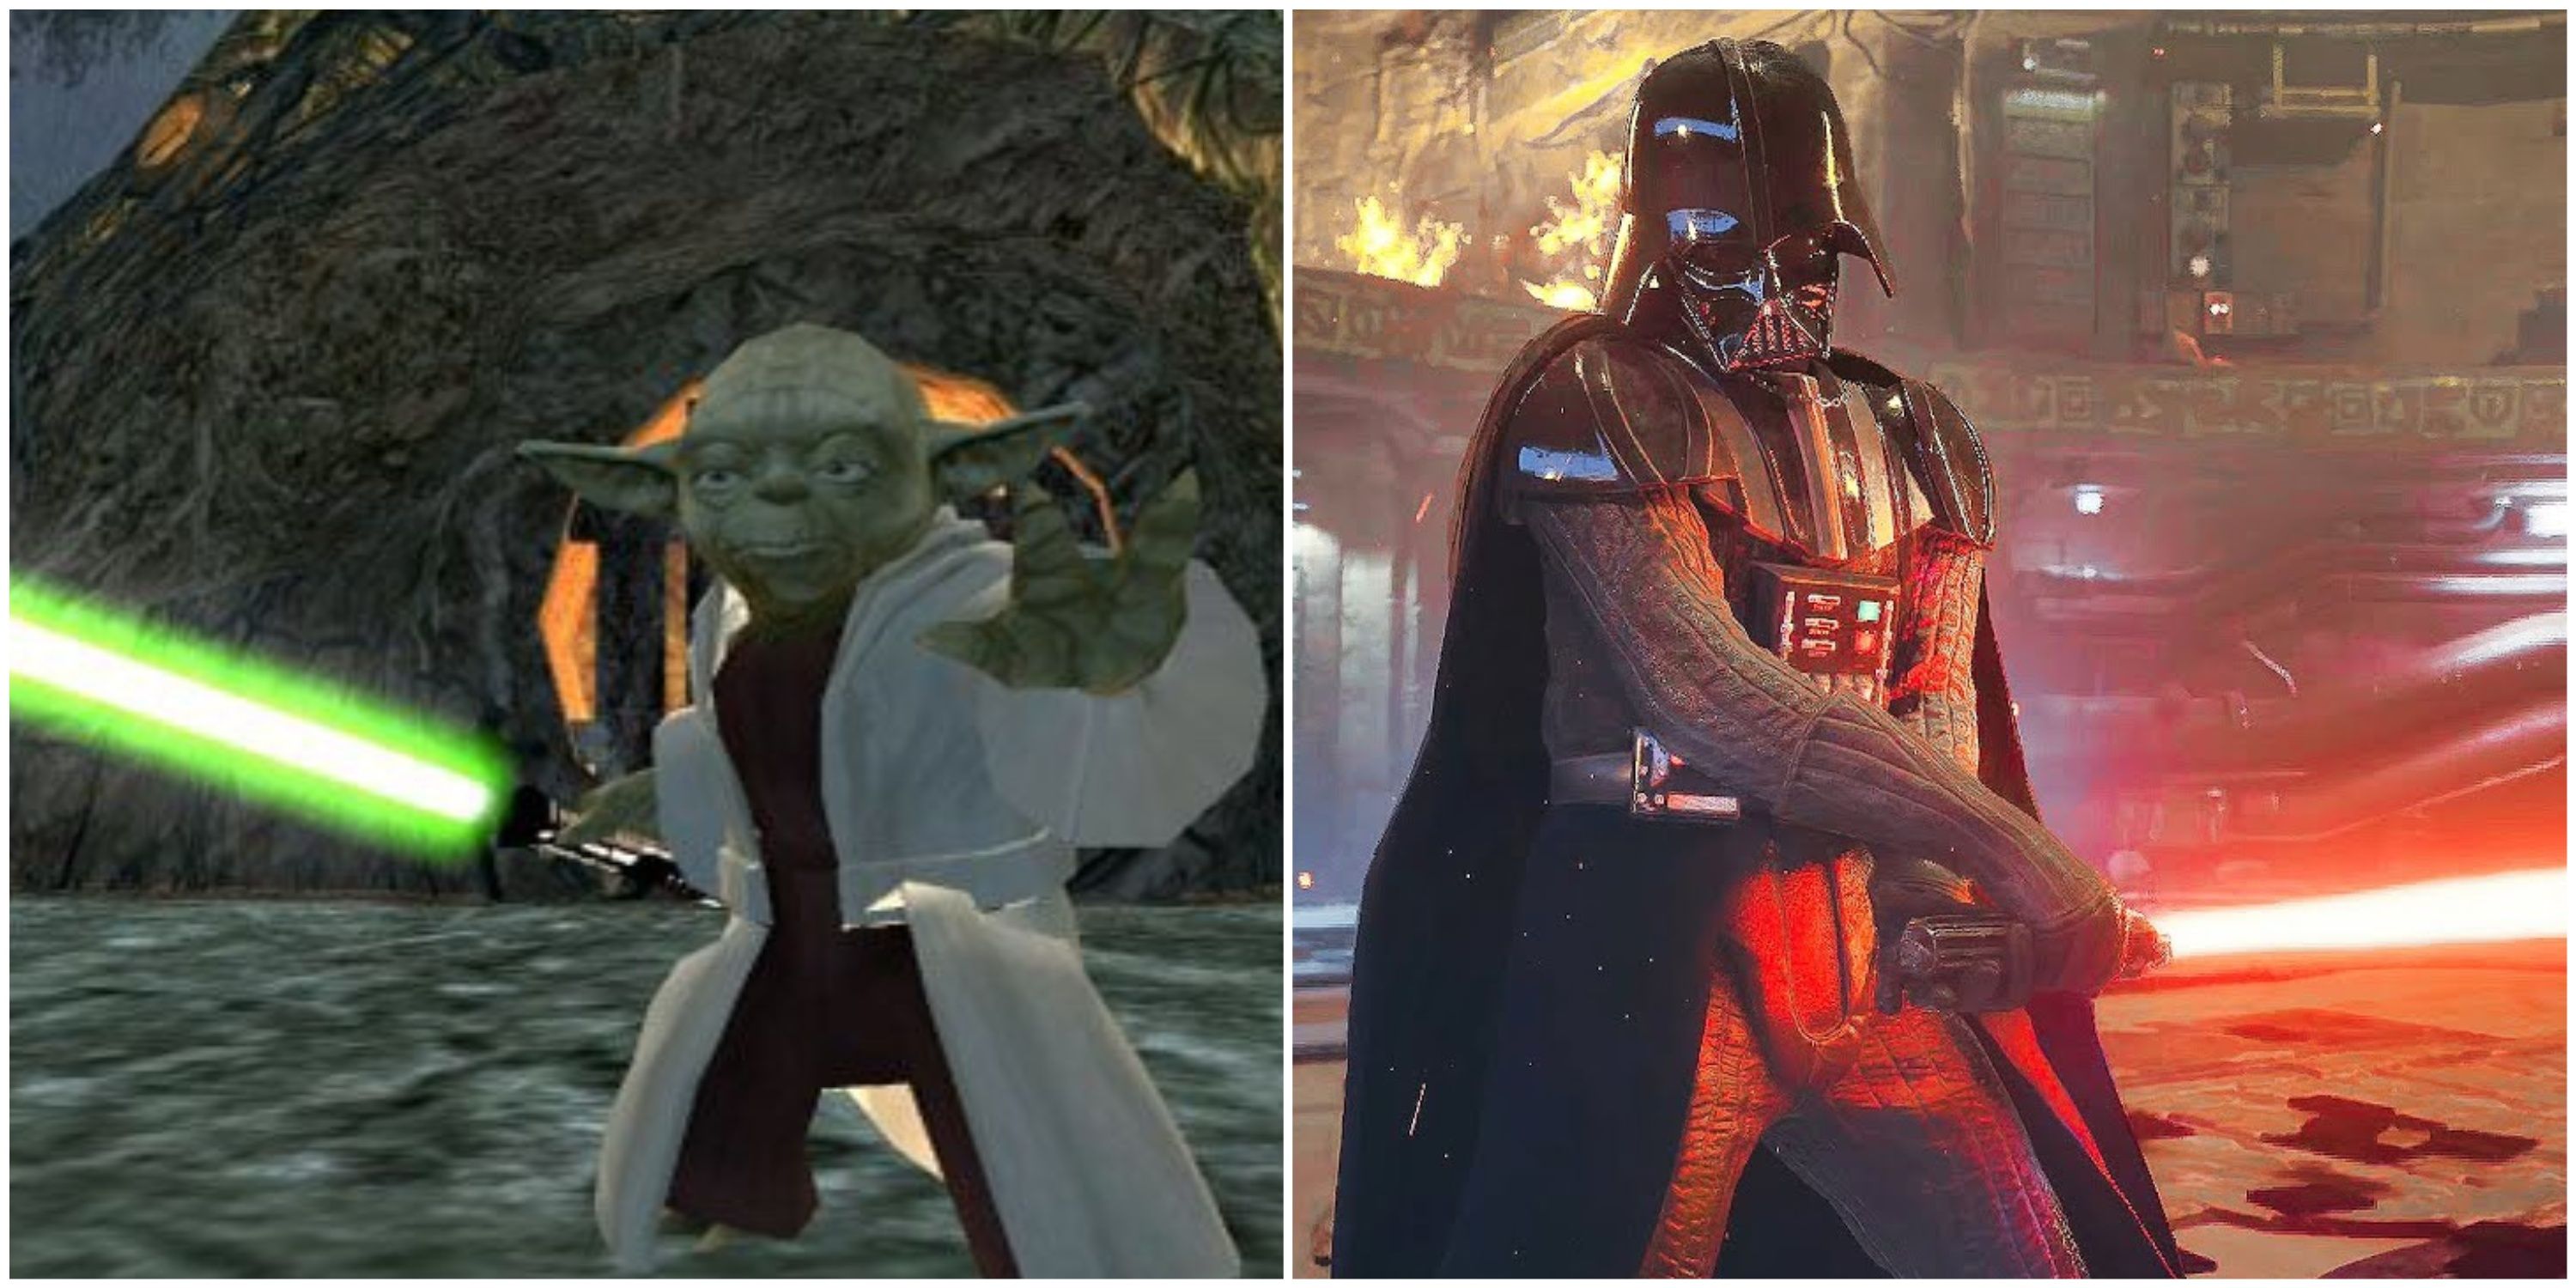 Personagens de Star Wars que apareceram na maioria dos jogos